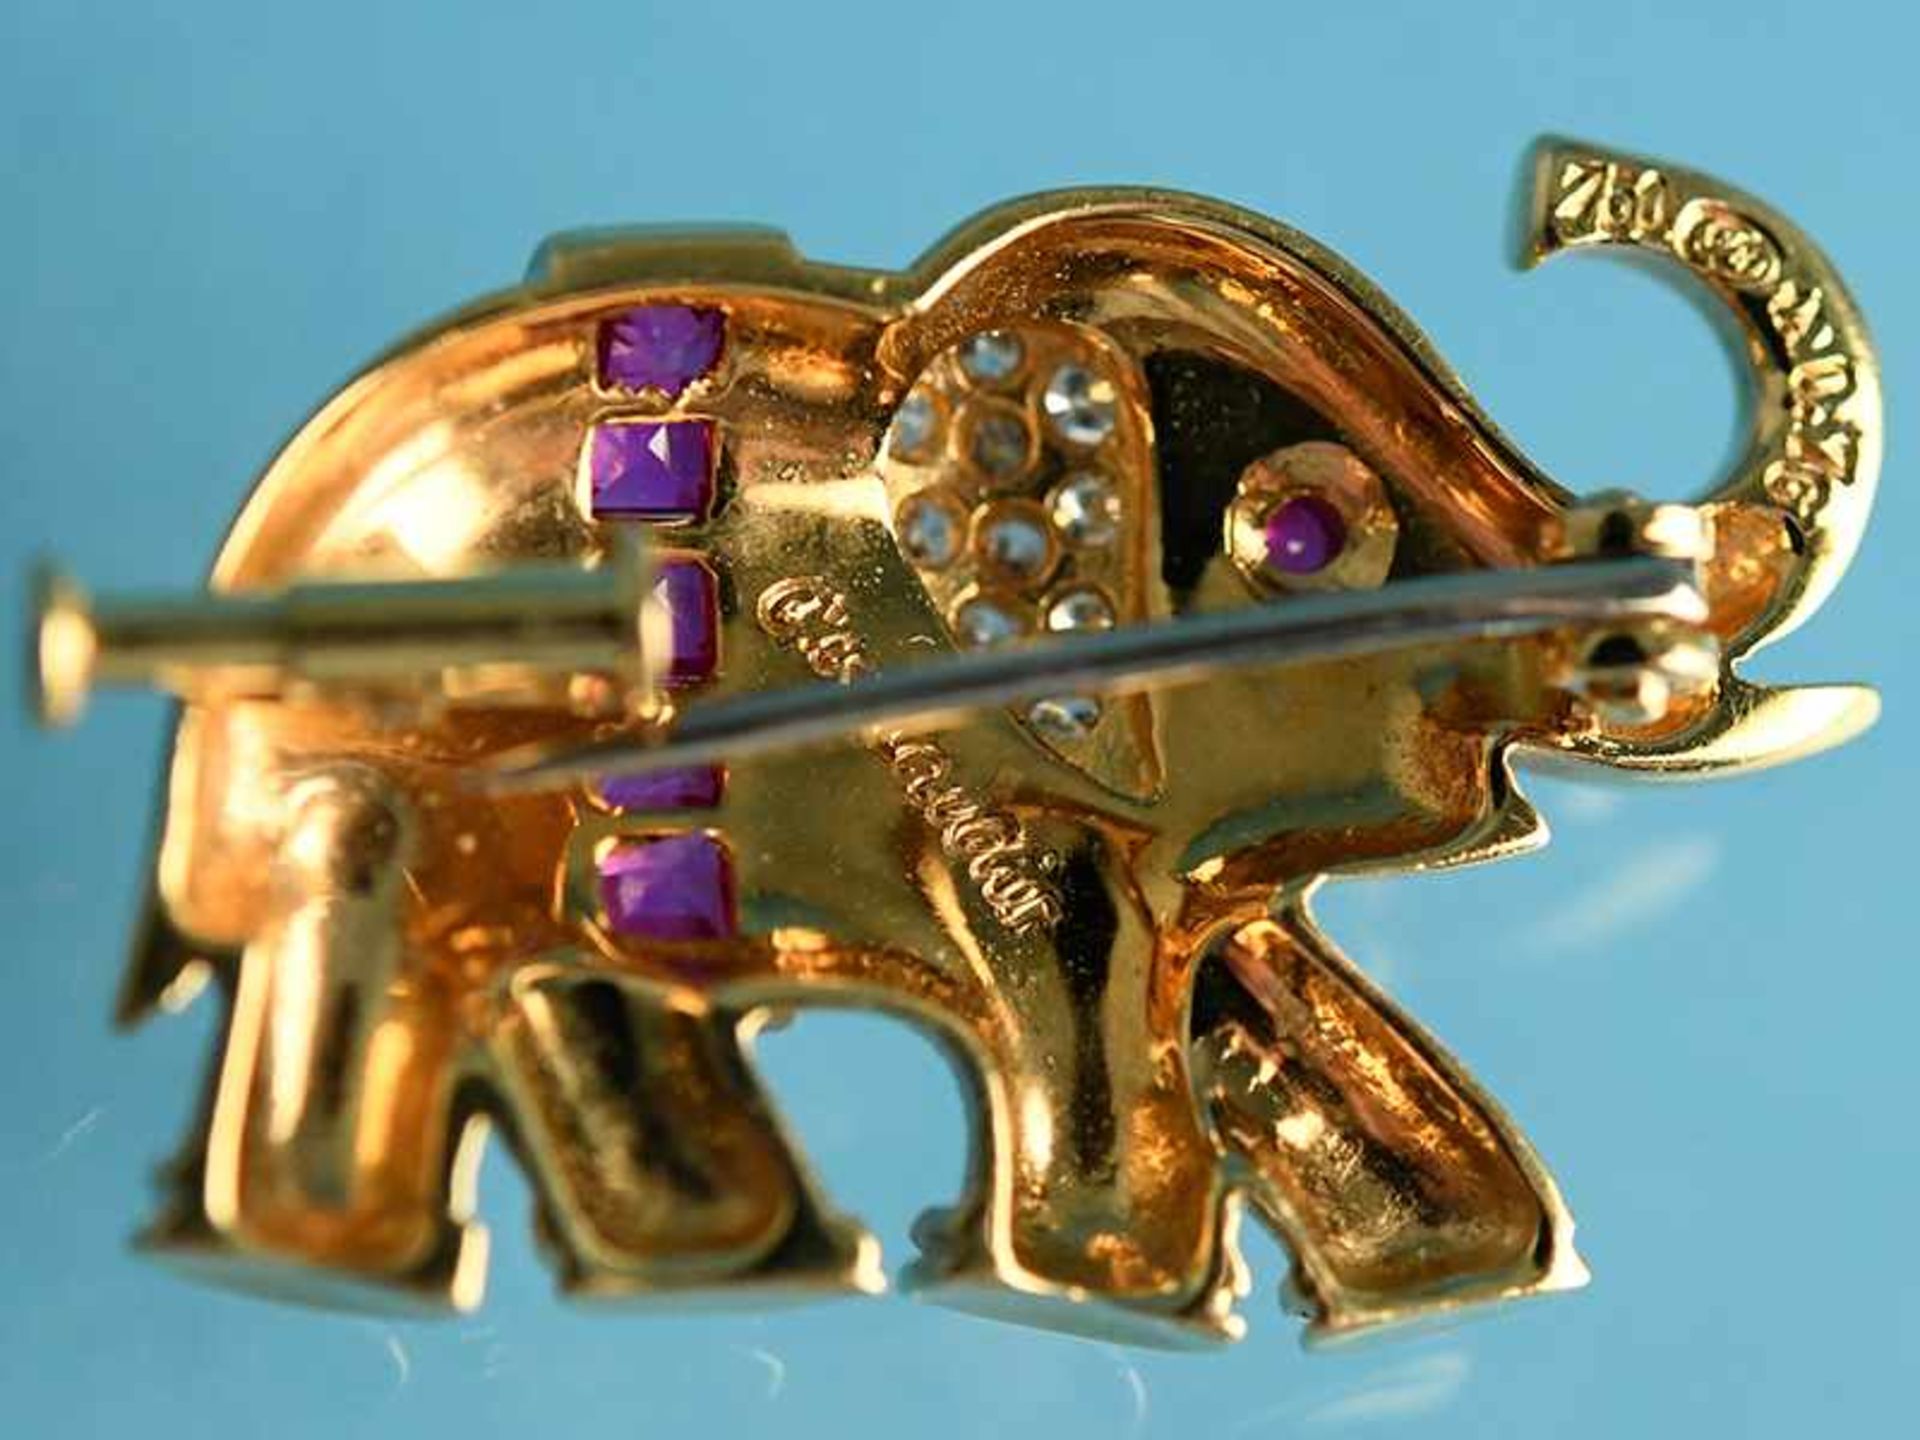 Brosche in Tierform "Elefant" mit 6 Rubinen 0,65 ct und 10 Brillanten 0,14 ct, Juweliersarbeit von - Image 3 of 3